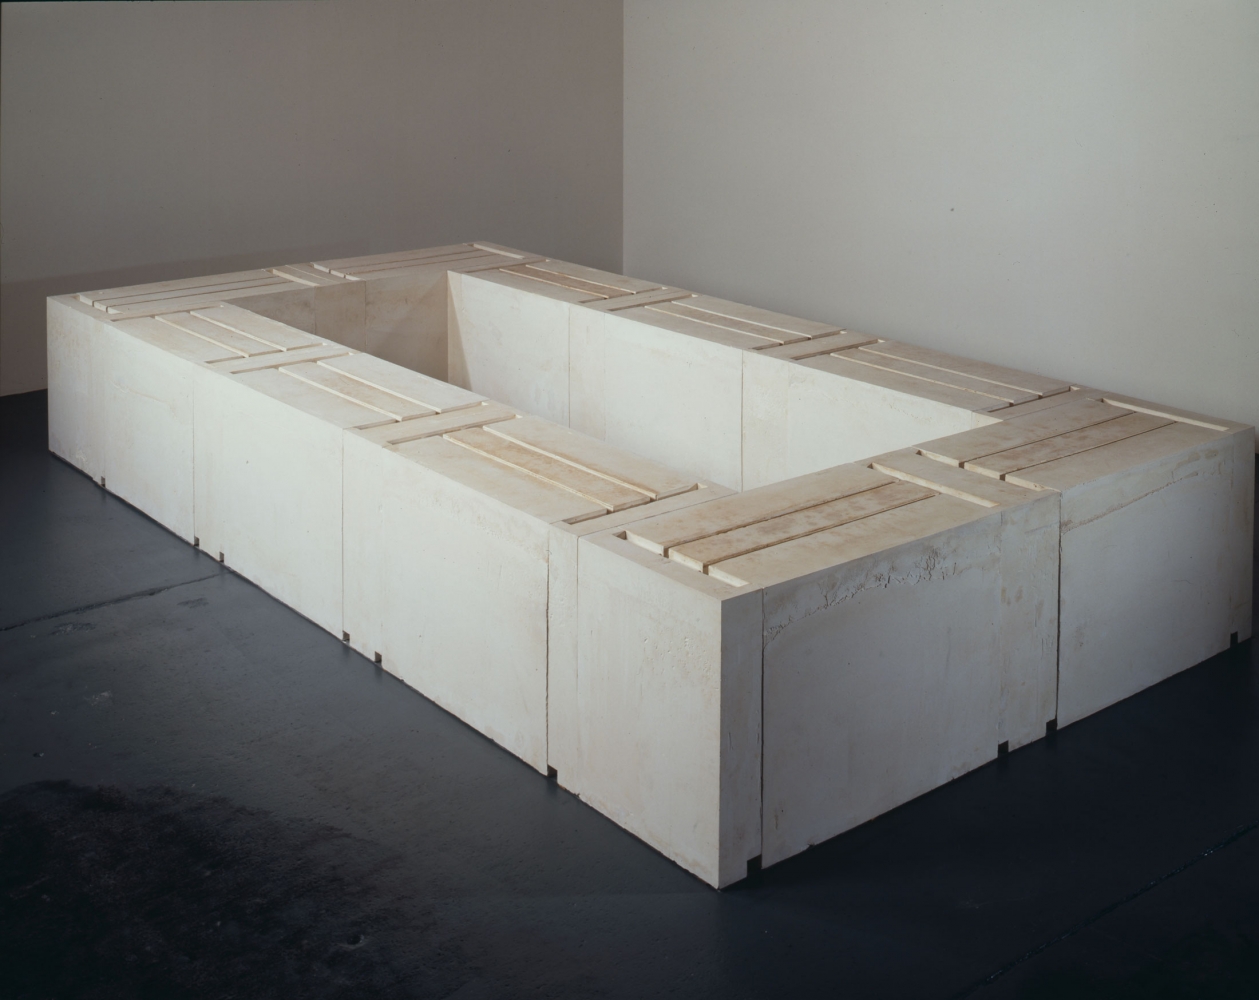 Rachel Whiteread Untitled (Ten Tables), 1996